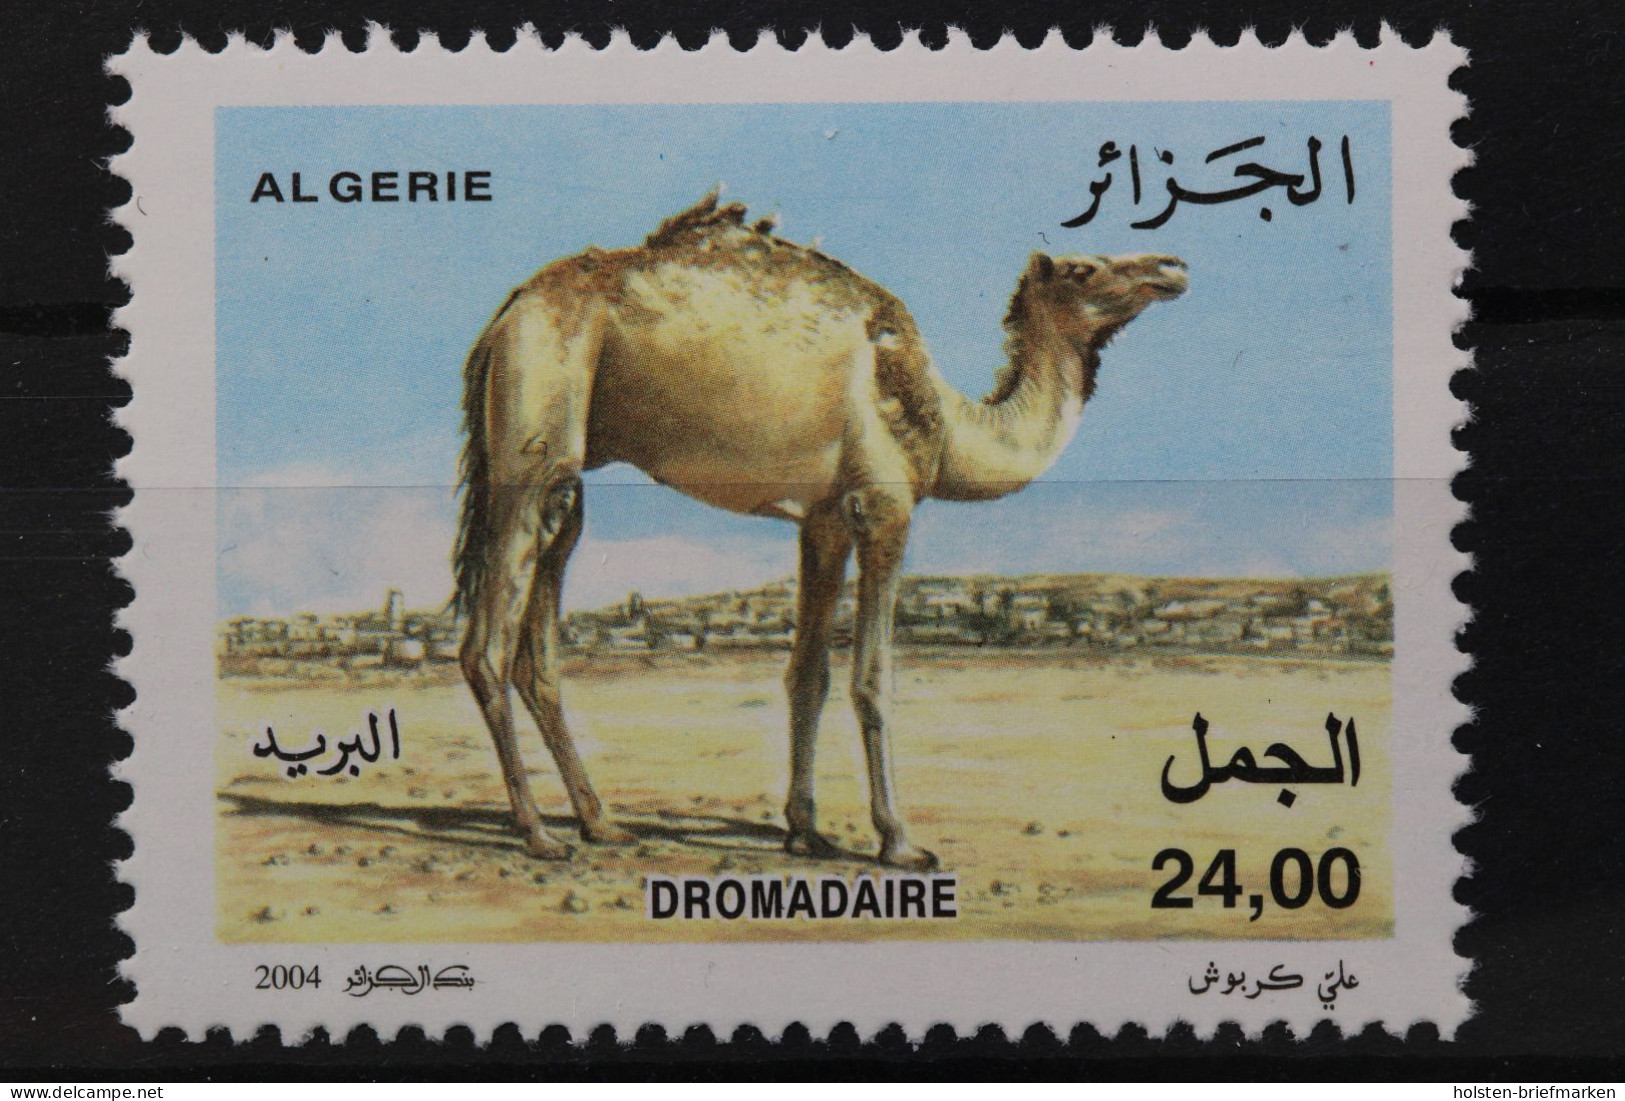 Algerien, MiNr. 1423, Postfrisch - Algeria (1962-...)